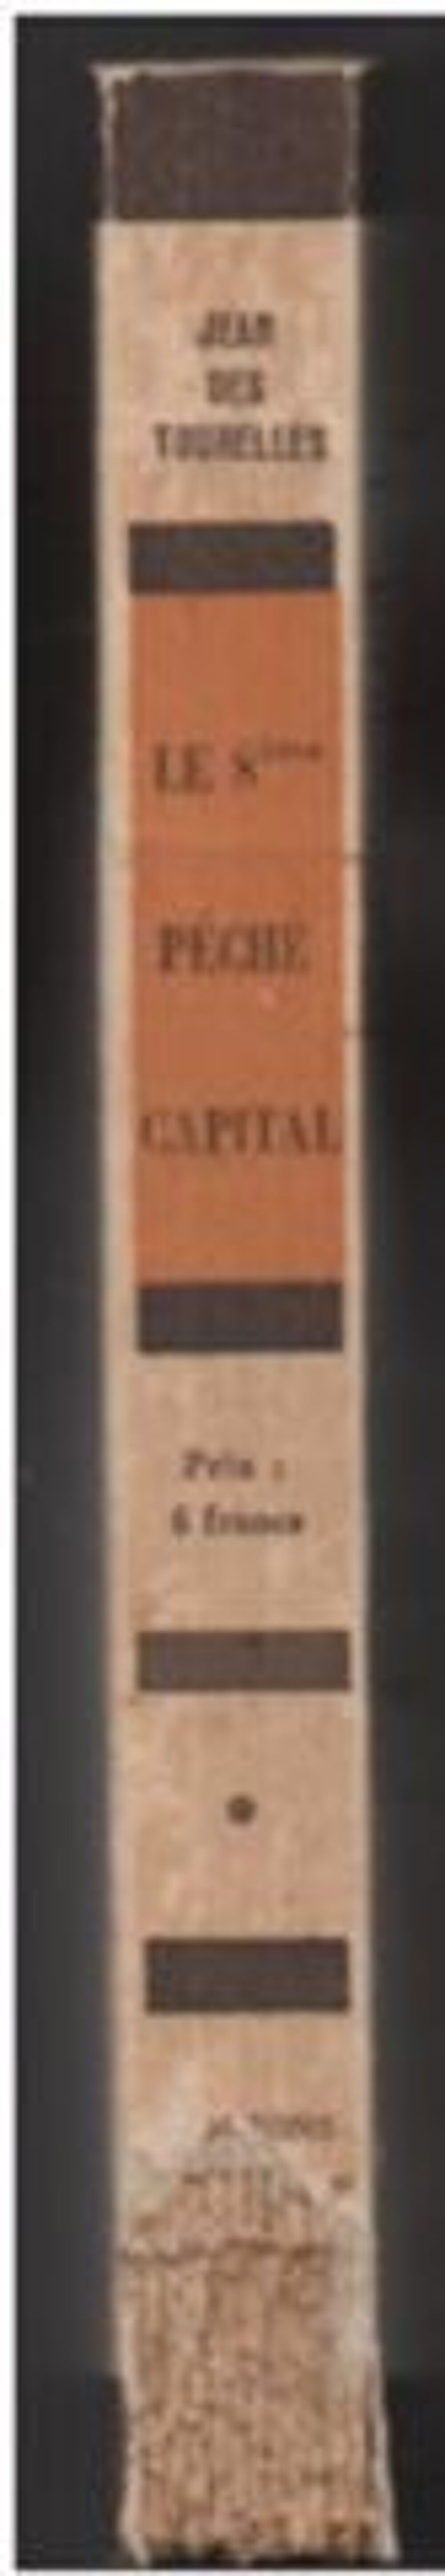 LE 8e PECHE CAPITAL de Jean des Tourelles - 1935 Livres et BD